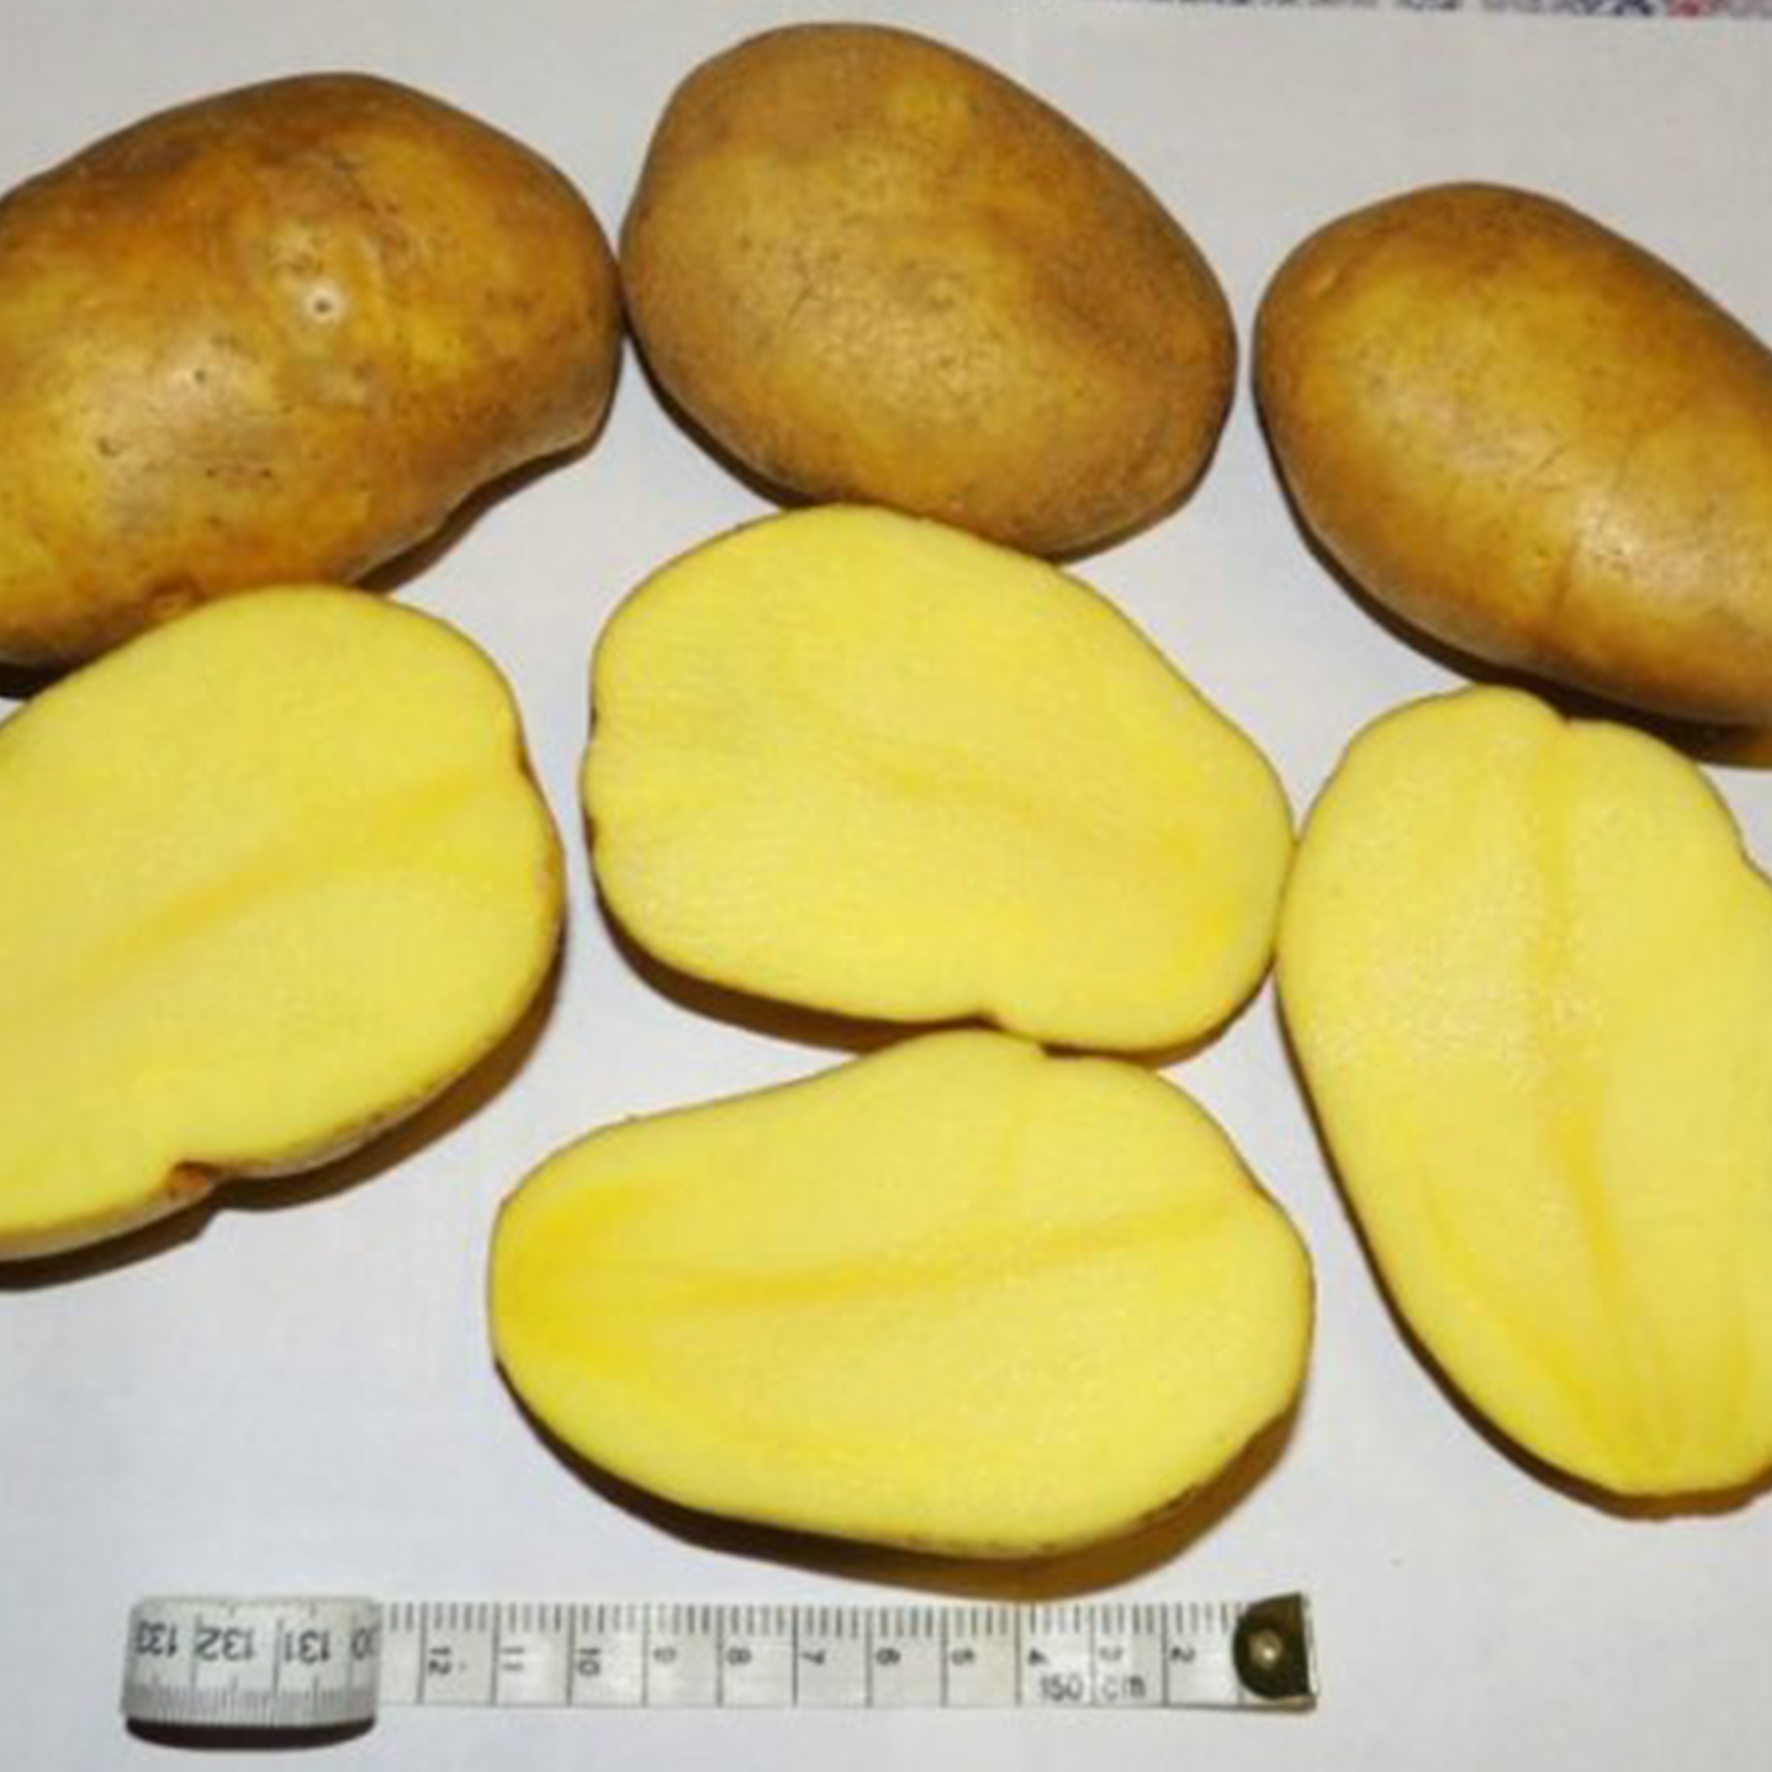 картофель сорта джелли фото